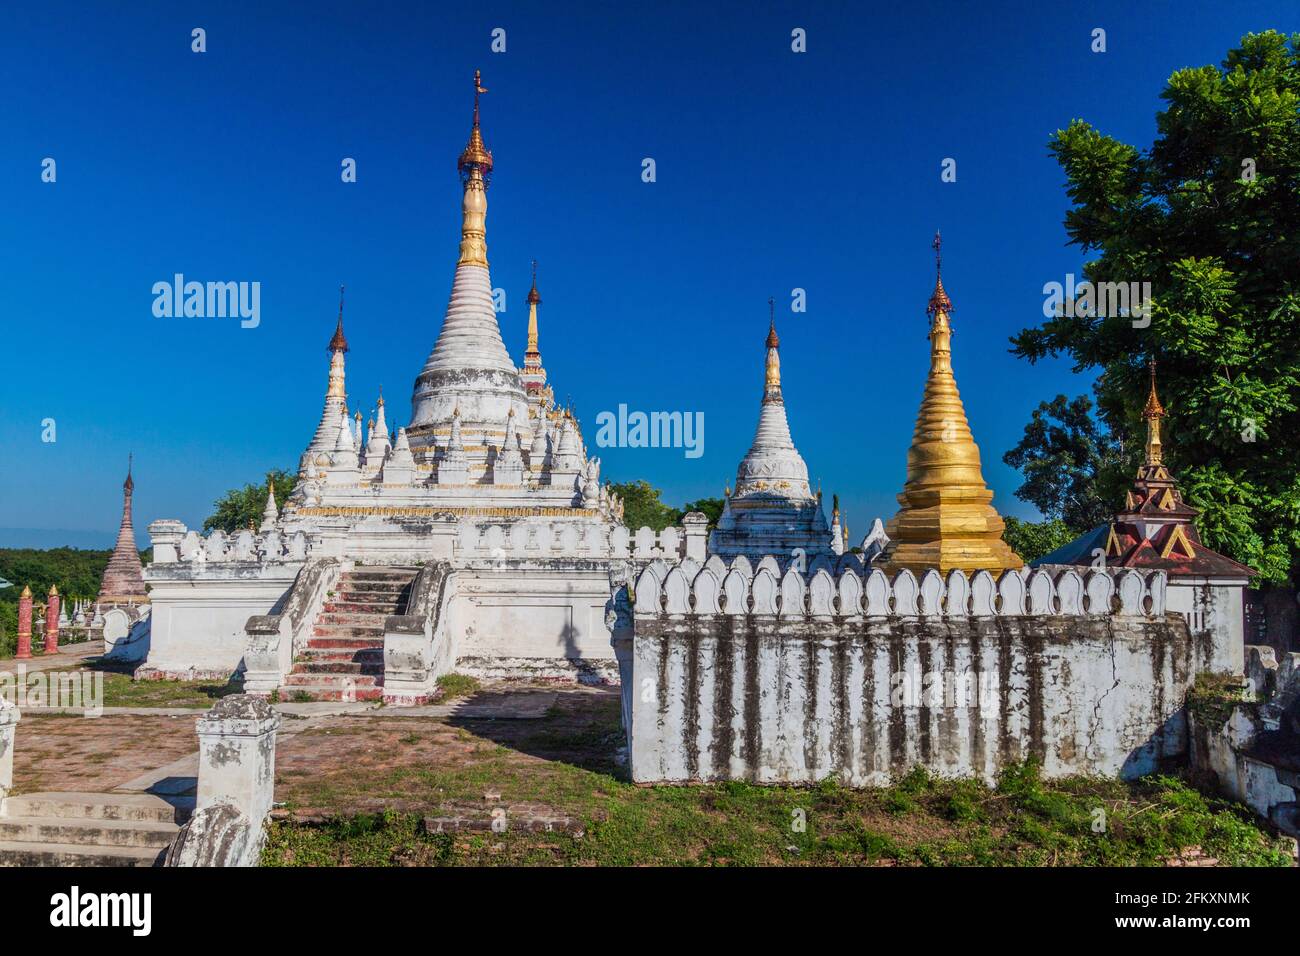 Pagodes au Monastère Bonzan de Maha Aungmye dans l'ancienne ville d'Inwa Ava près de Mandalay, Myanmar Banque D'Images